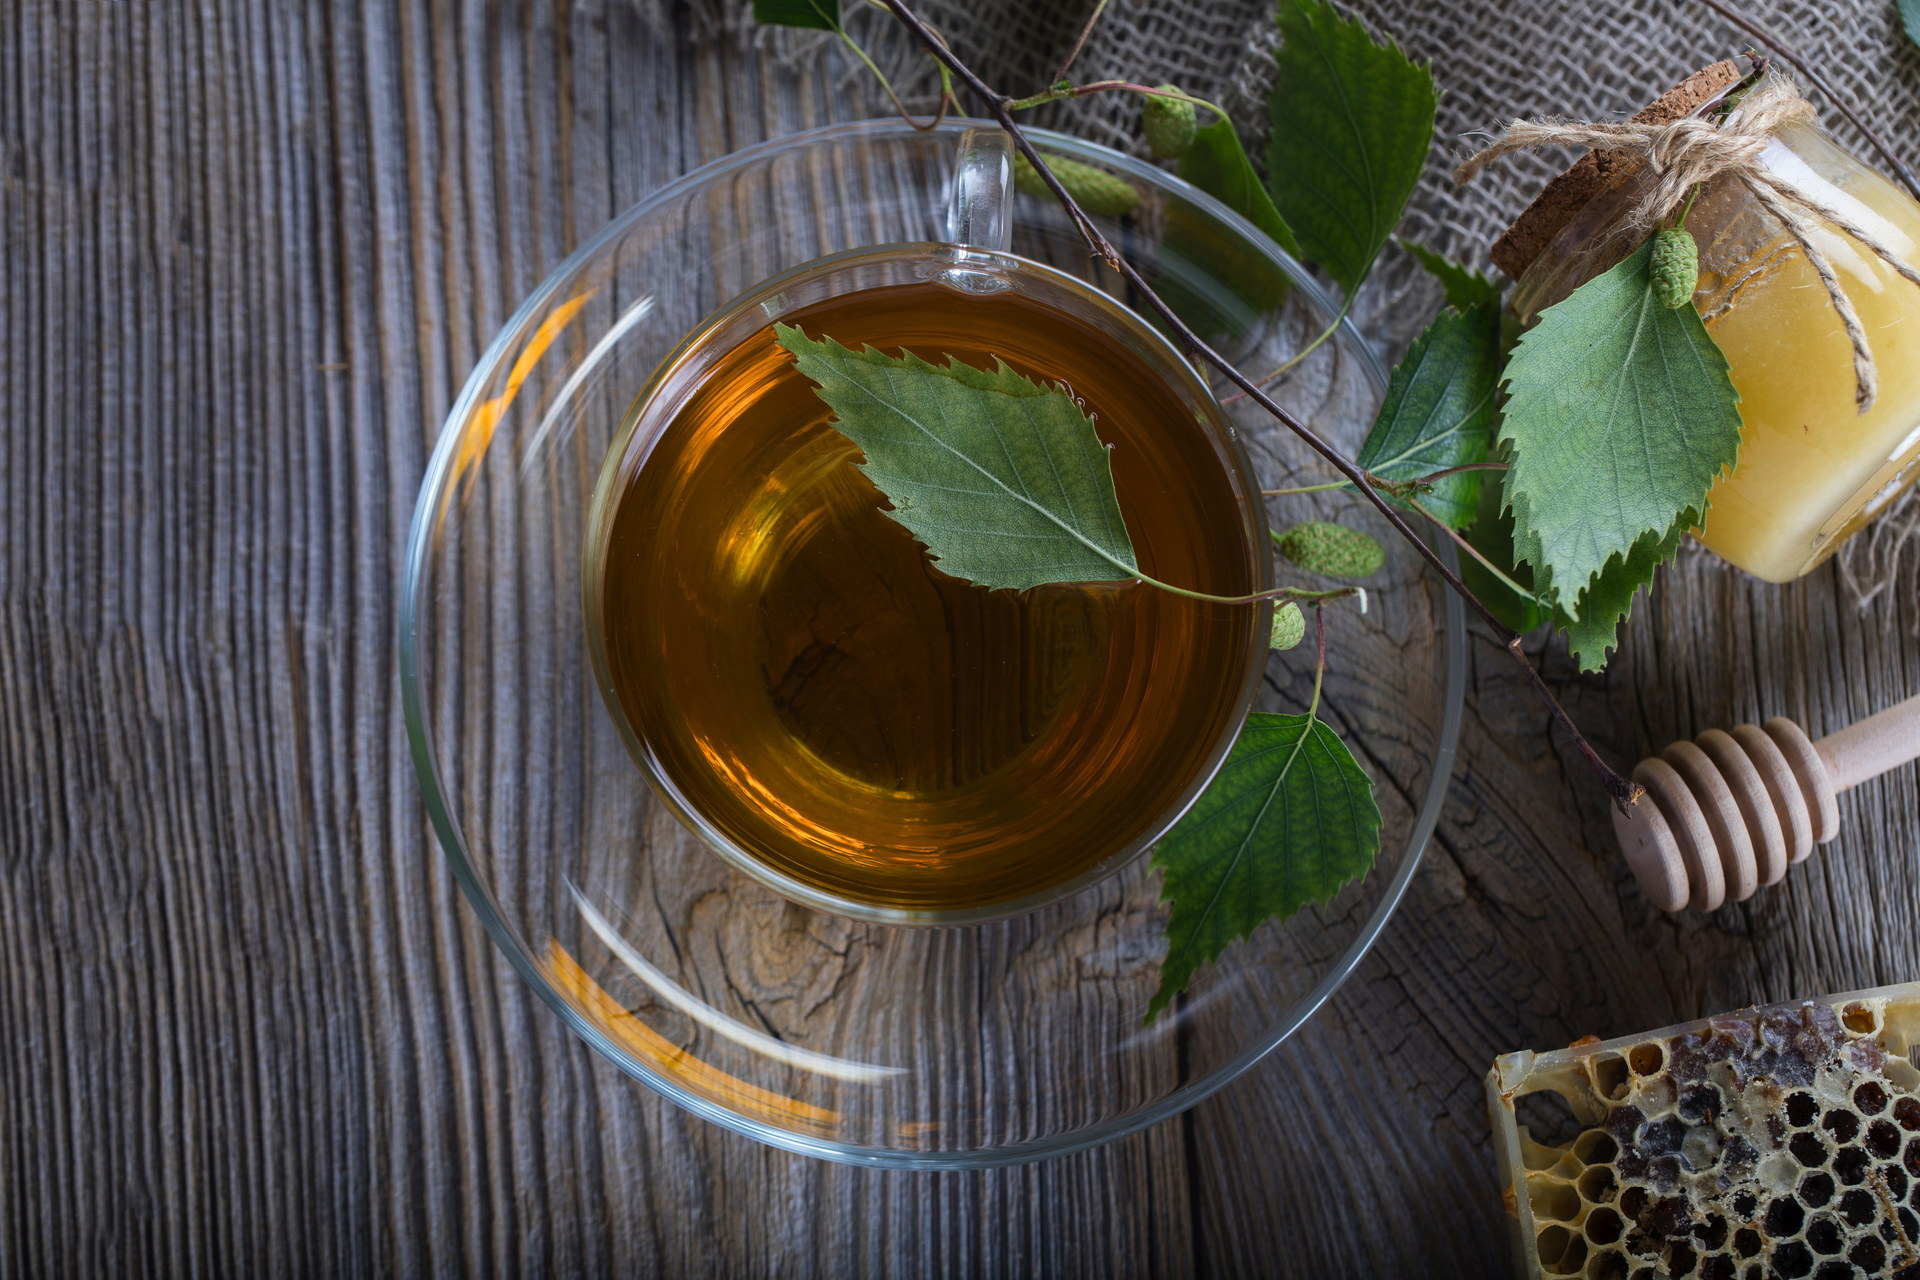 Na tym obrazku widoczna jest delikatna filiżanka herbaty z liści orzecha włoskiego, której barwa przypomina złocisty bursztyn. Aromatyczny bukiet unosi się z napoju, tworząc przyjemną atmosferę relaksu i odprężenia. Ta wyjątkowa herbata nie tylko koi podniebienie swoim delikatnym smakiem, ale również oferuje liczne korzyści zdrowotne, wspierając nasz organizm swoimi wartościami odżywczymi i antyoksydacyjnymi